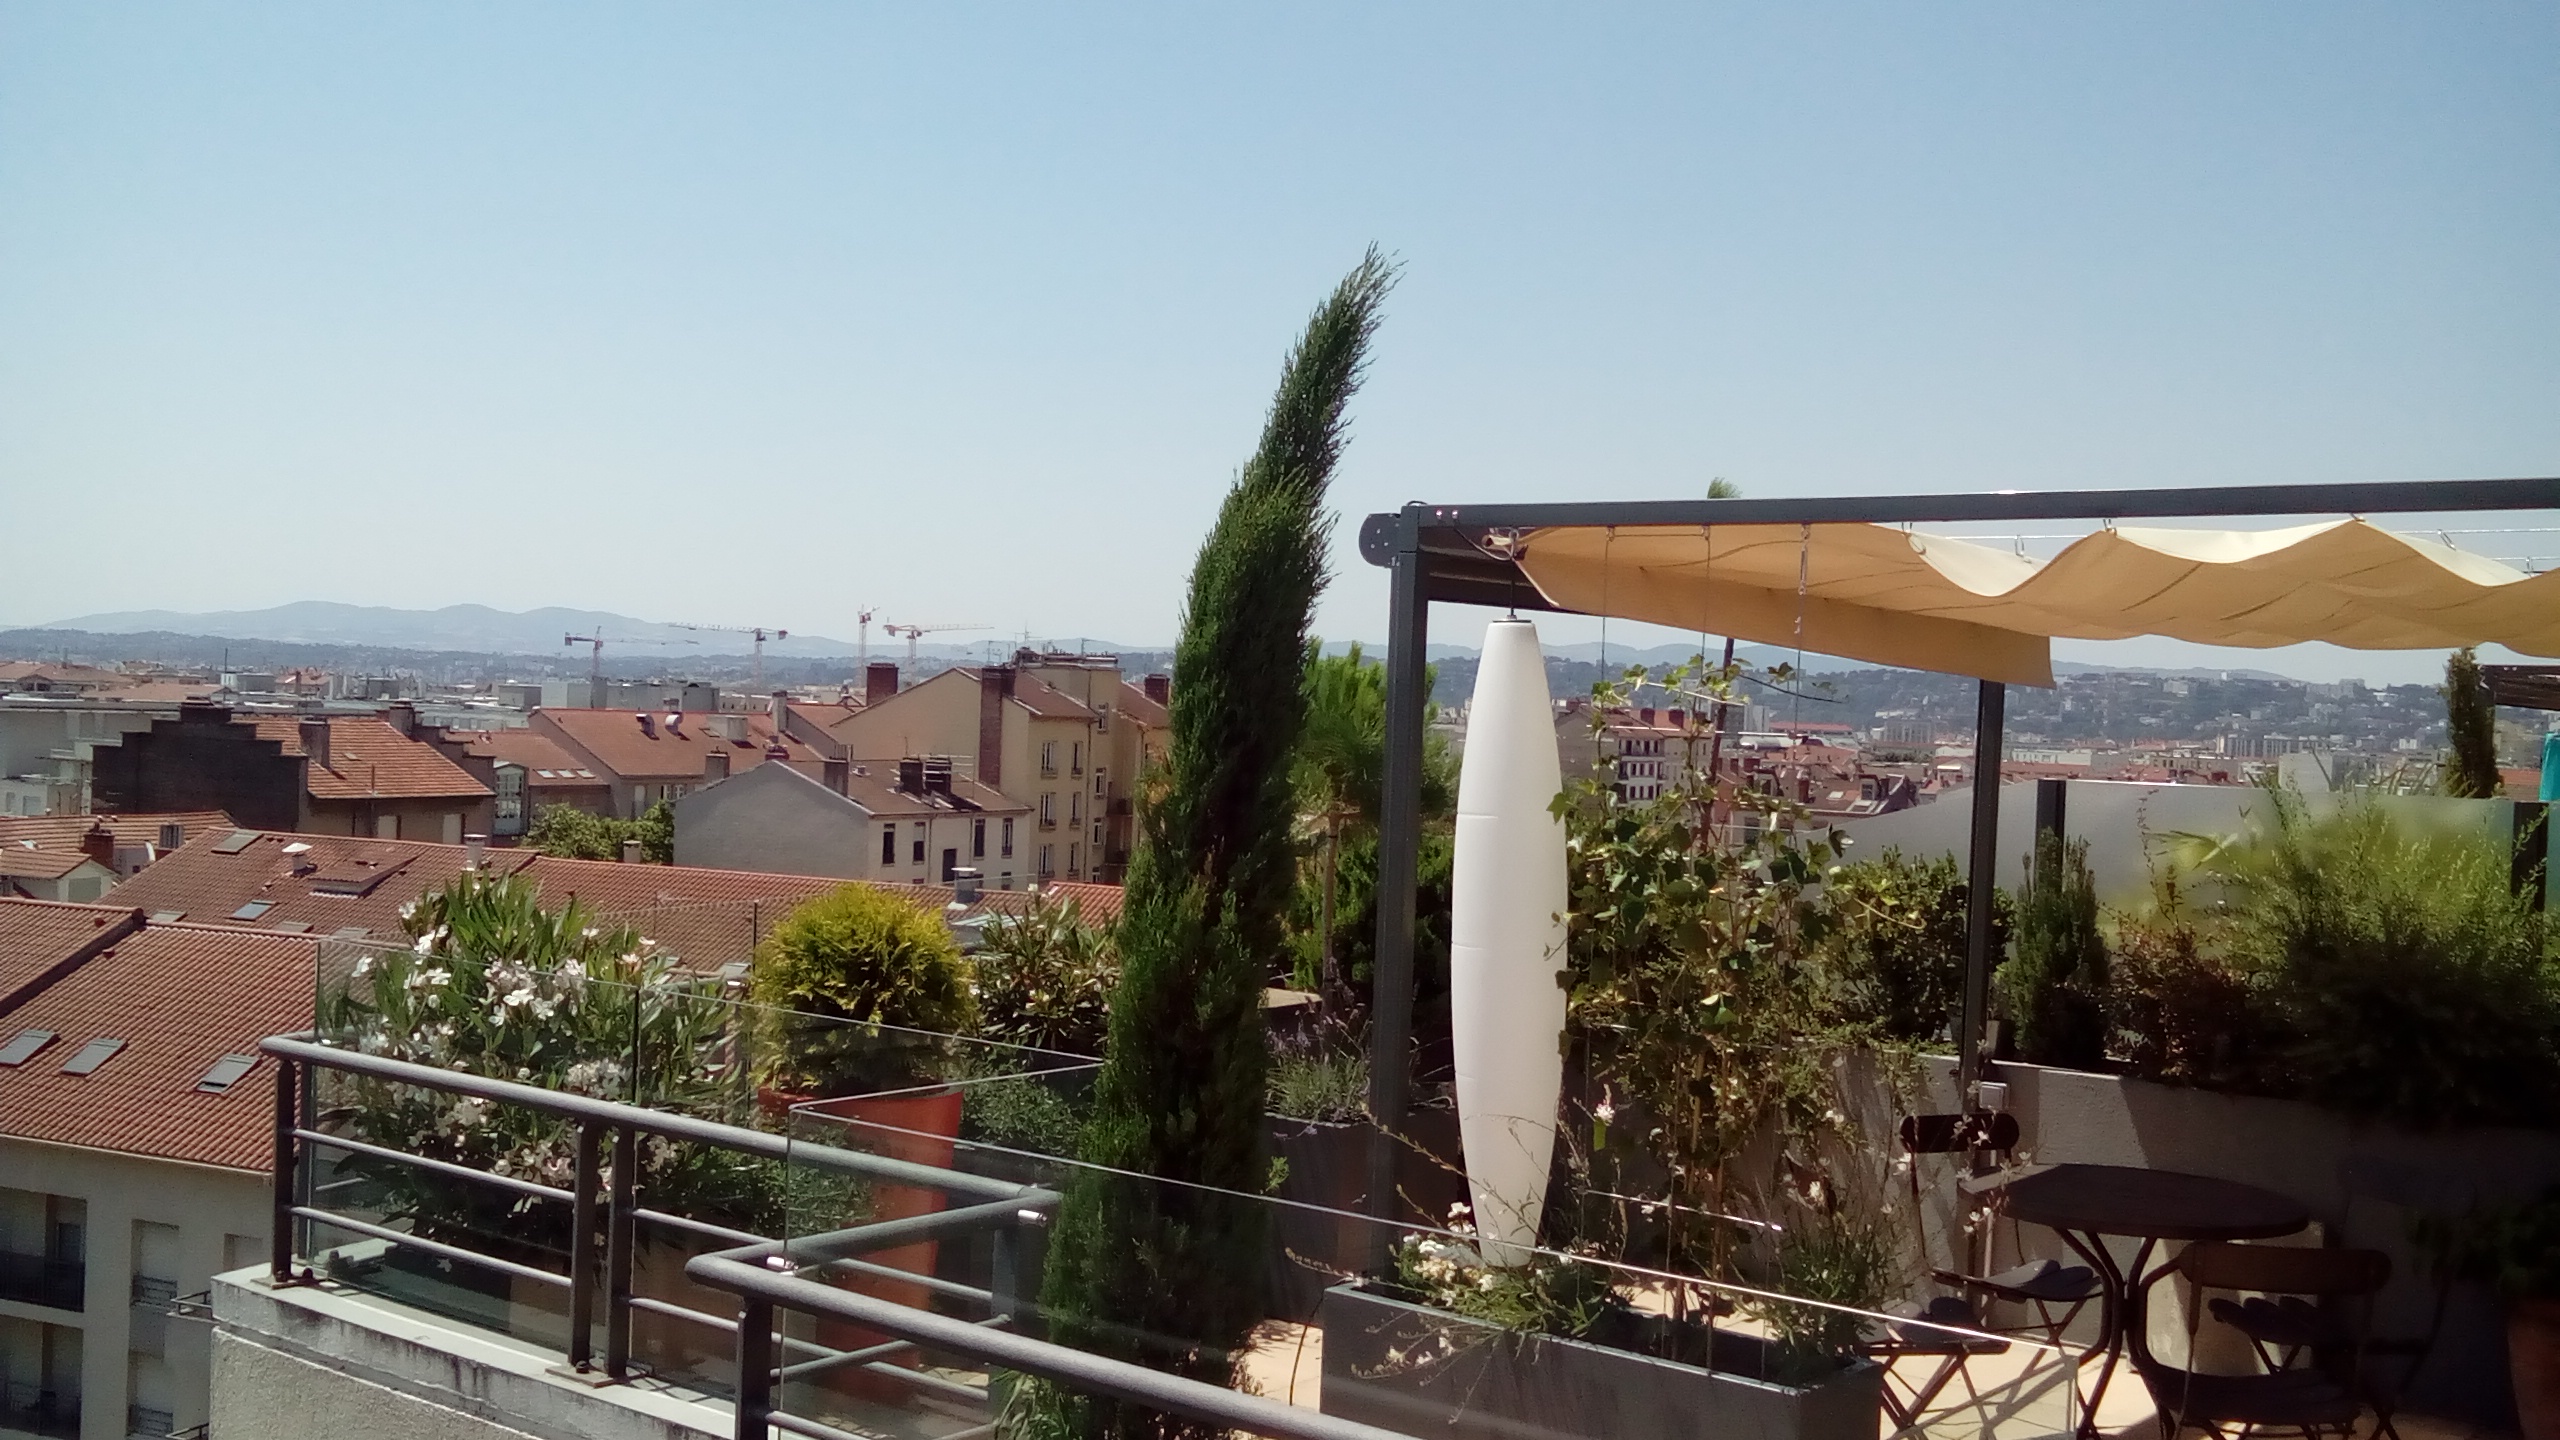 Exonido réalise la conception et la pose d'aménagements de terrasses dans la région de Lyon